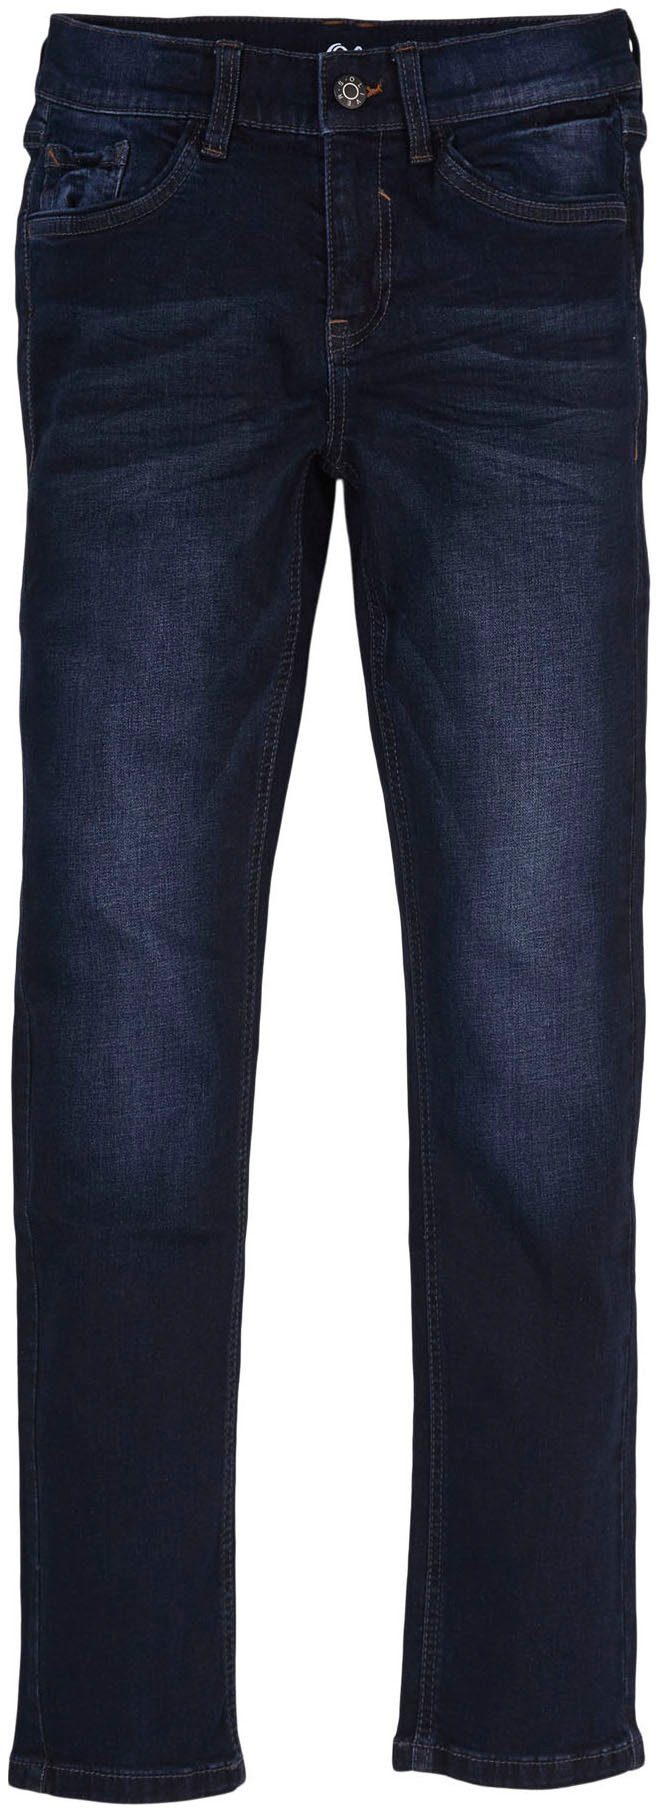 Junior s.Oliver mit Elasthan-Anteil Skinny-fit-Jeans, Baumwollmischung